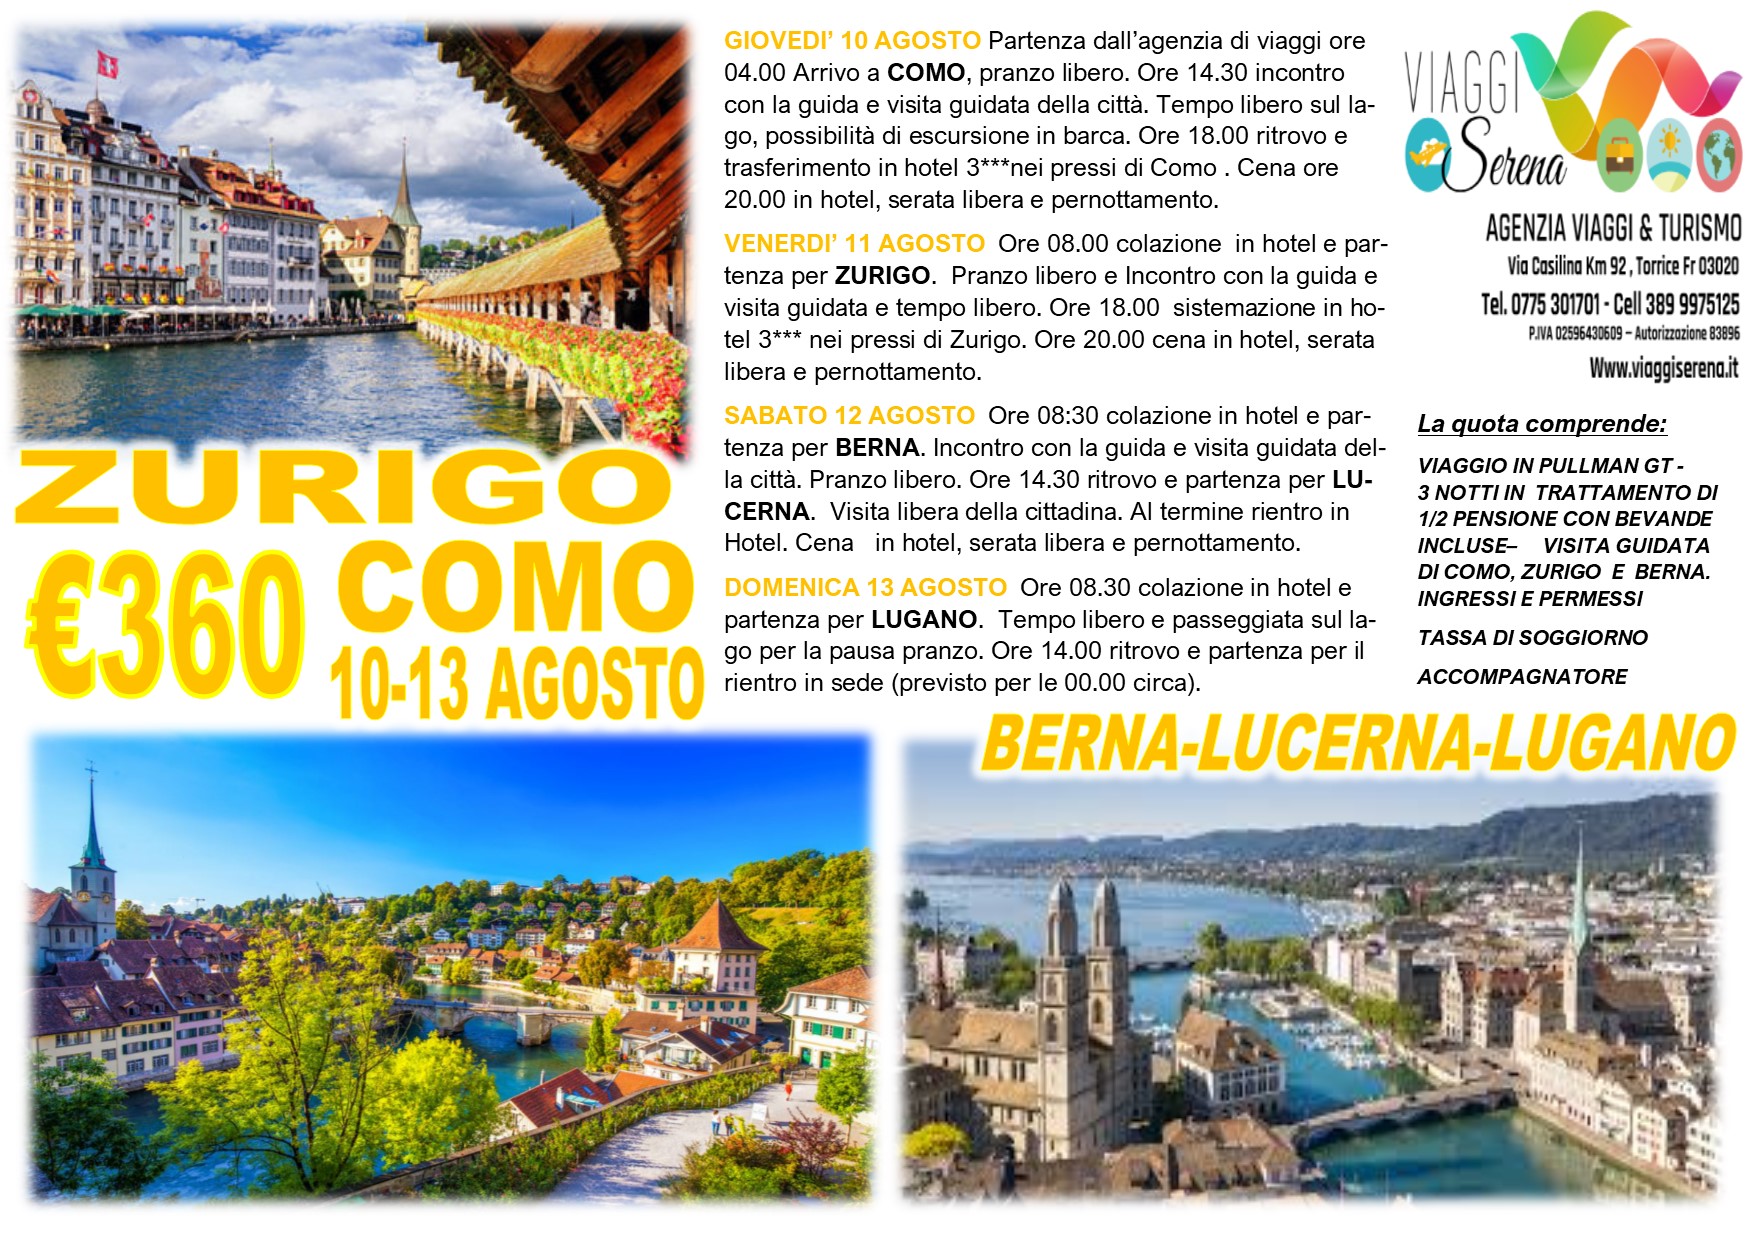 Viaggi di Gruppo: Como, Zurigo, Lucerna, Lugano & Berna 10-13 Agosto €360,00